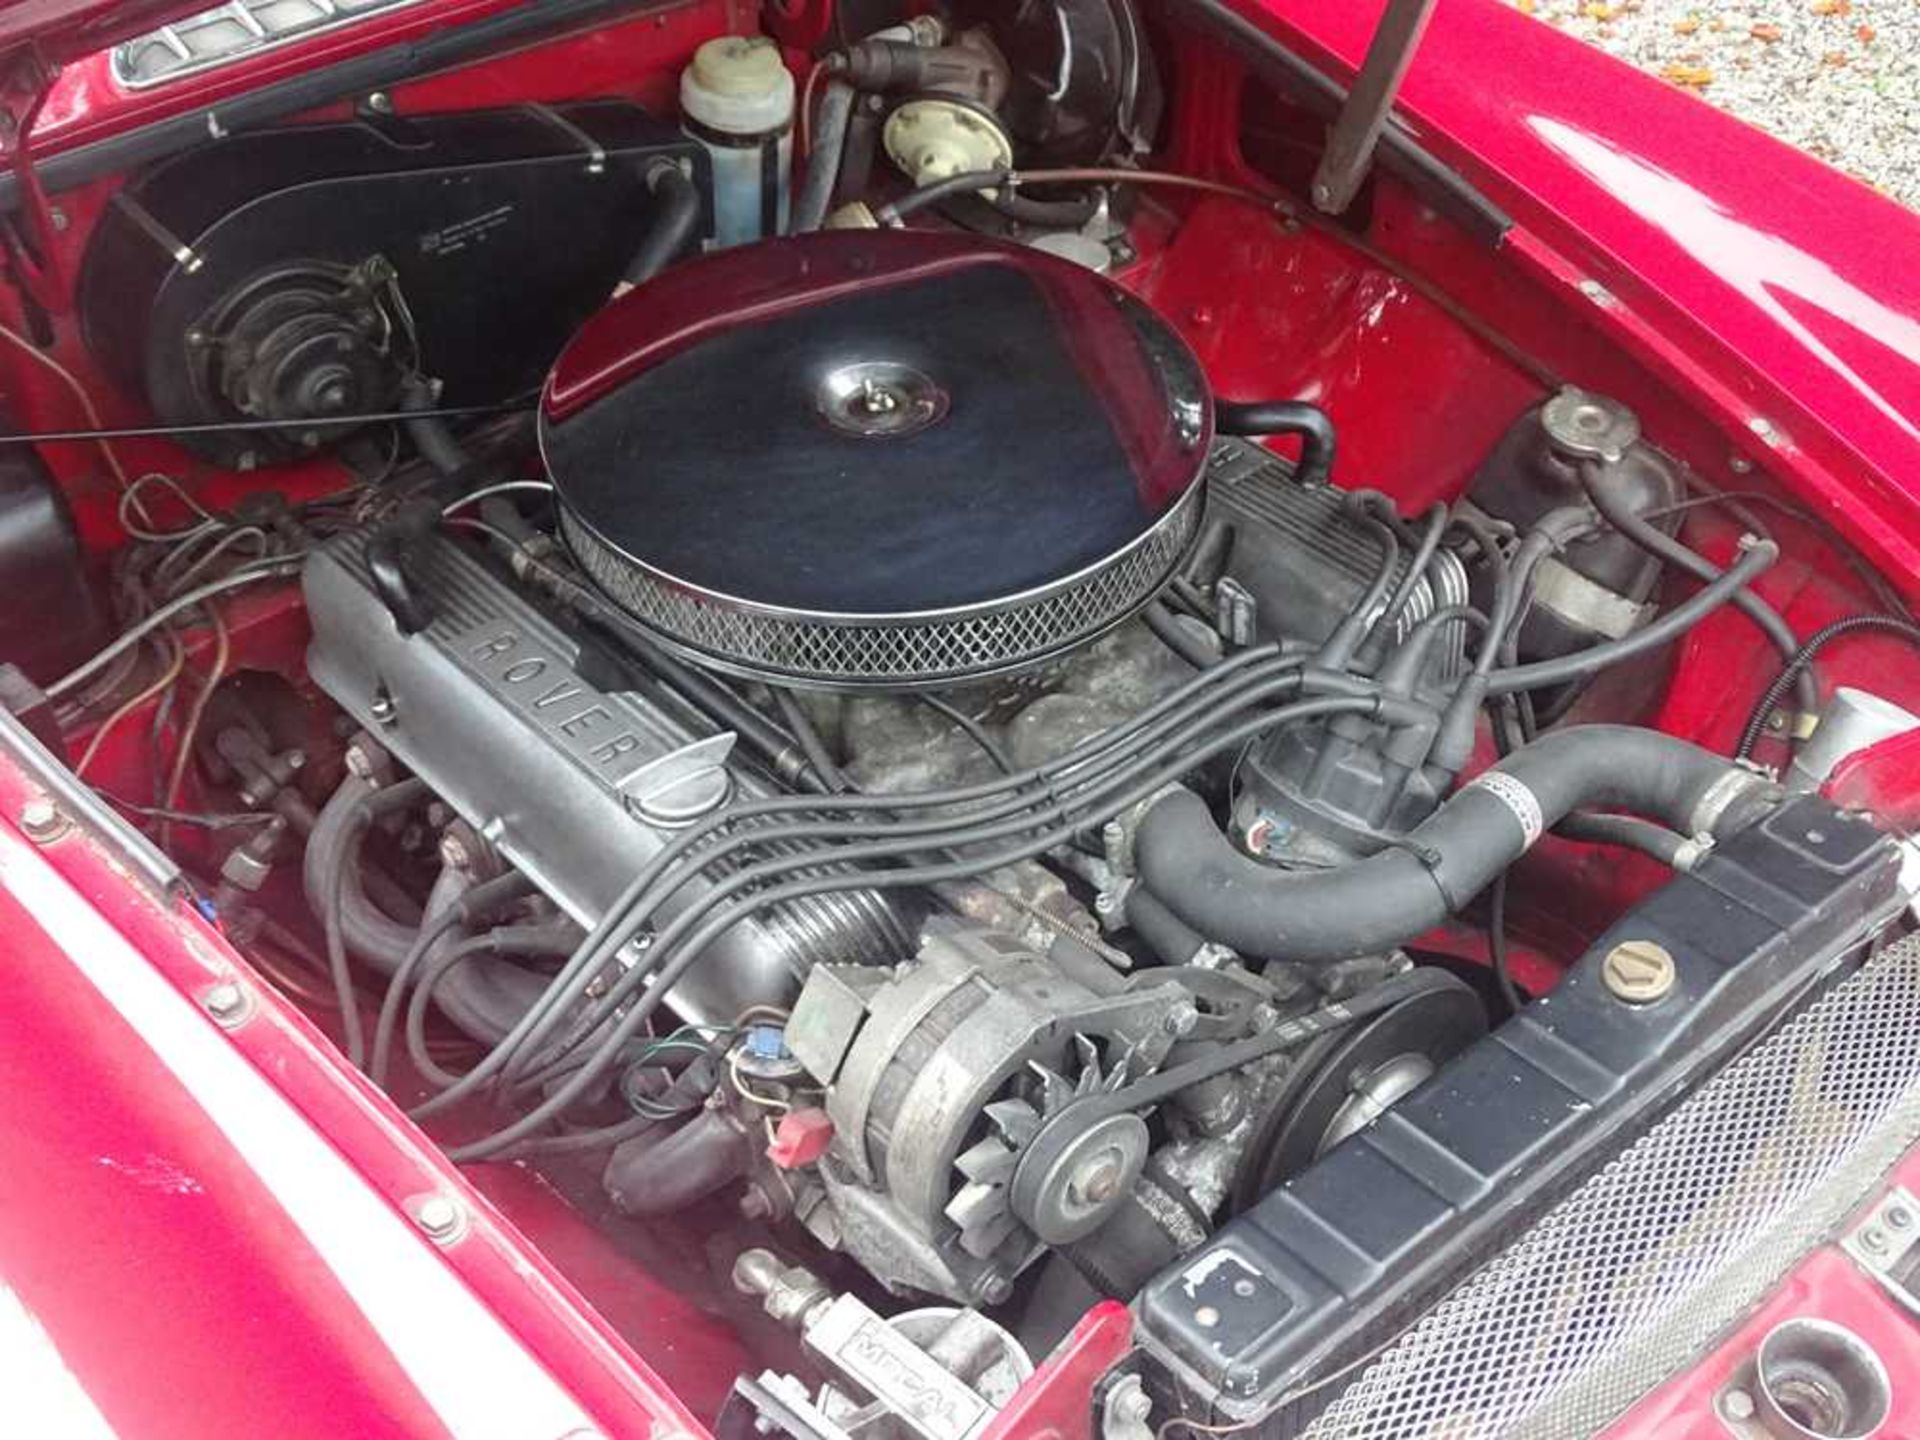 1970 MG B V8 Roadster - Image 19 of 29